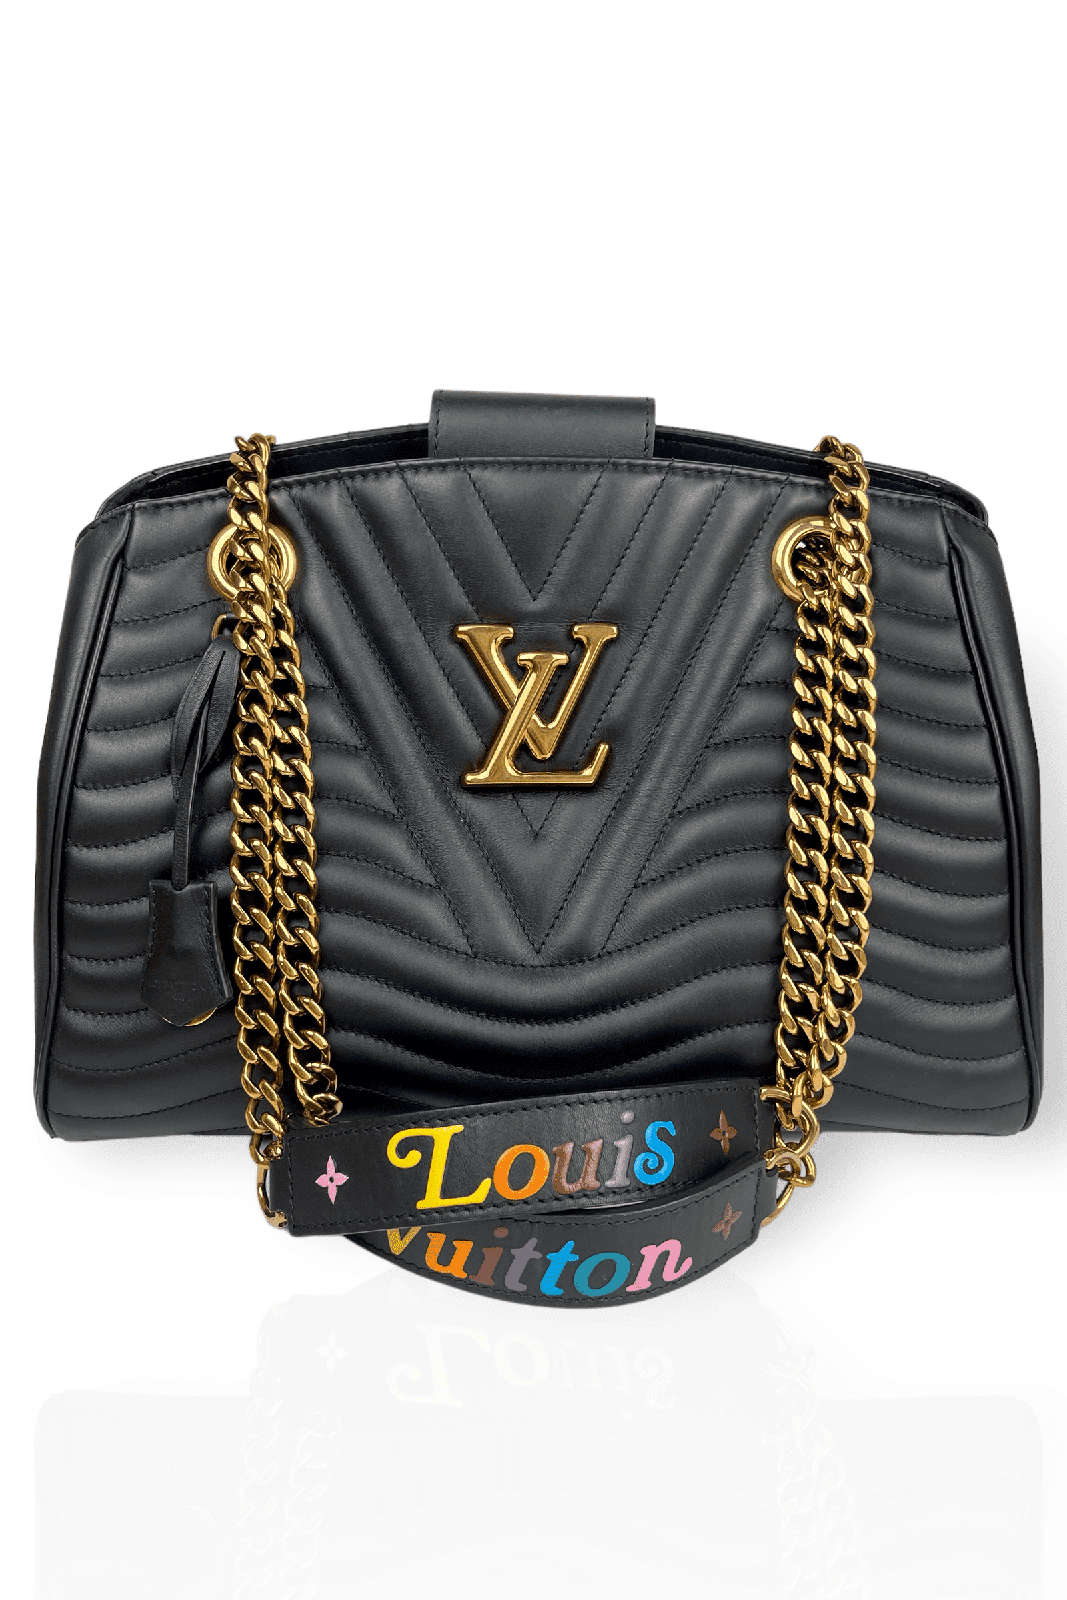 100% Authentic Louis Vuitton New Wave Chain Pink Shoulder Bag